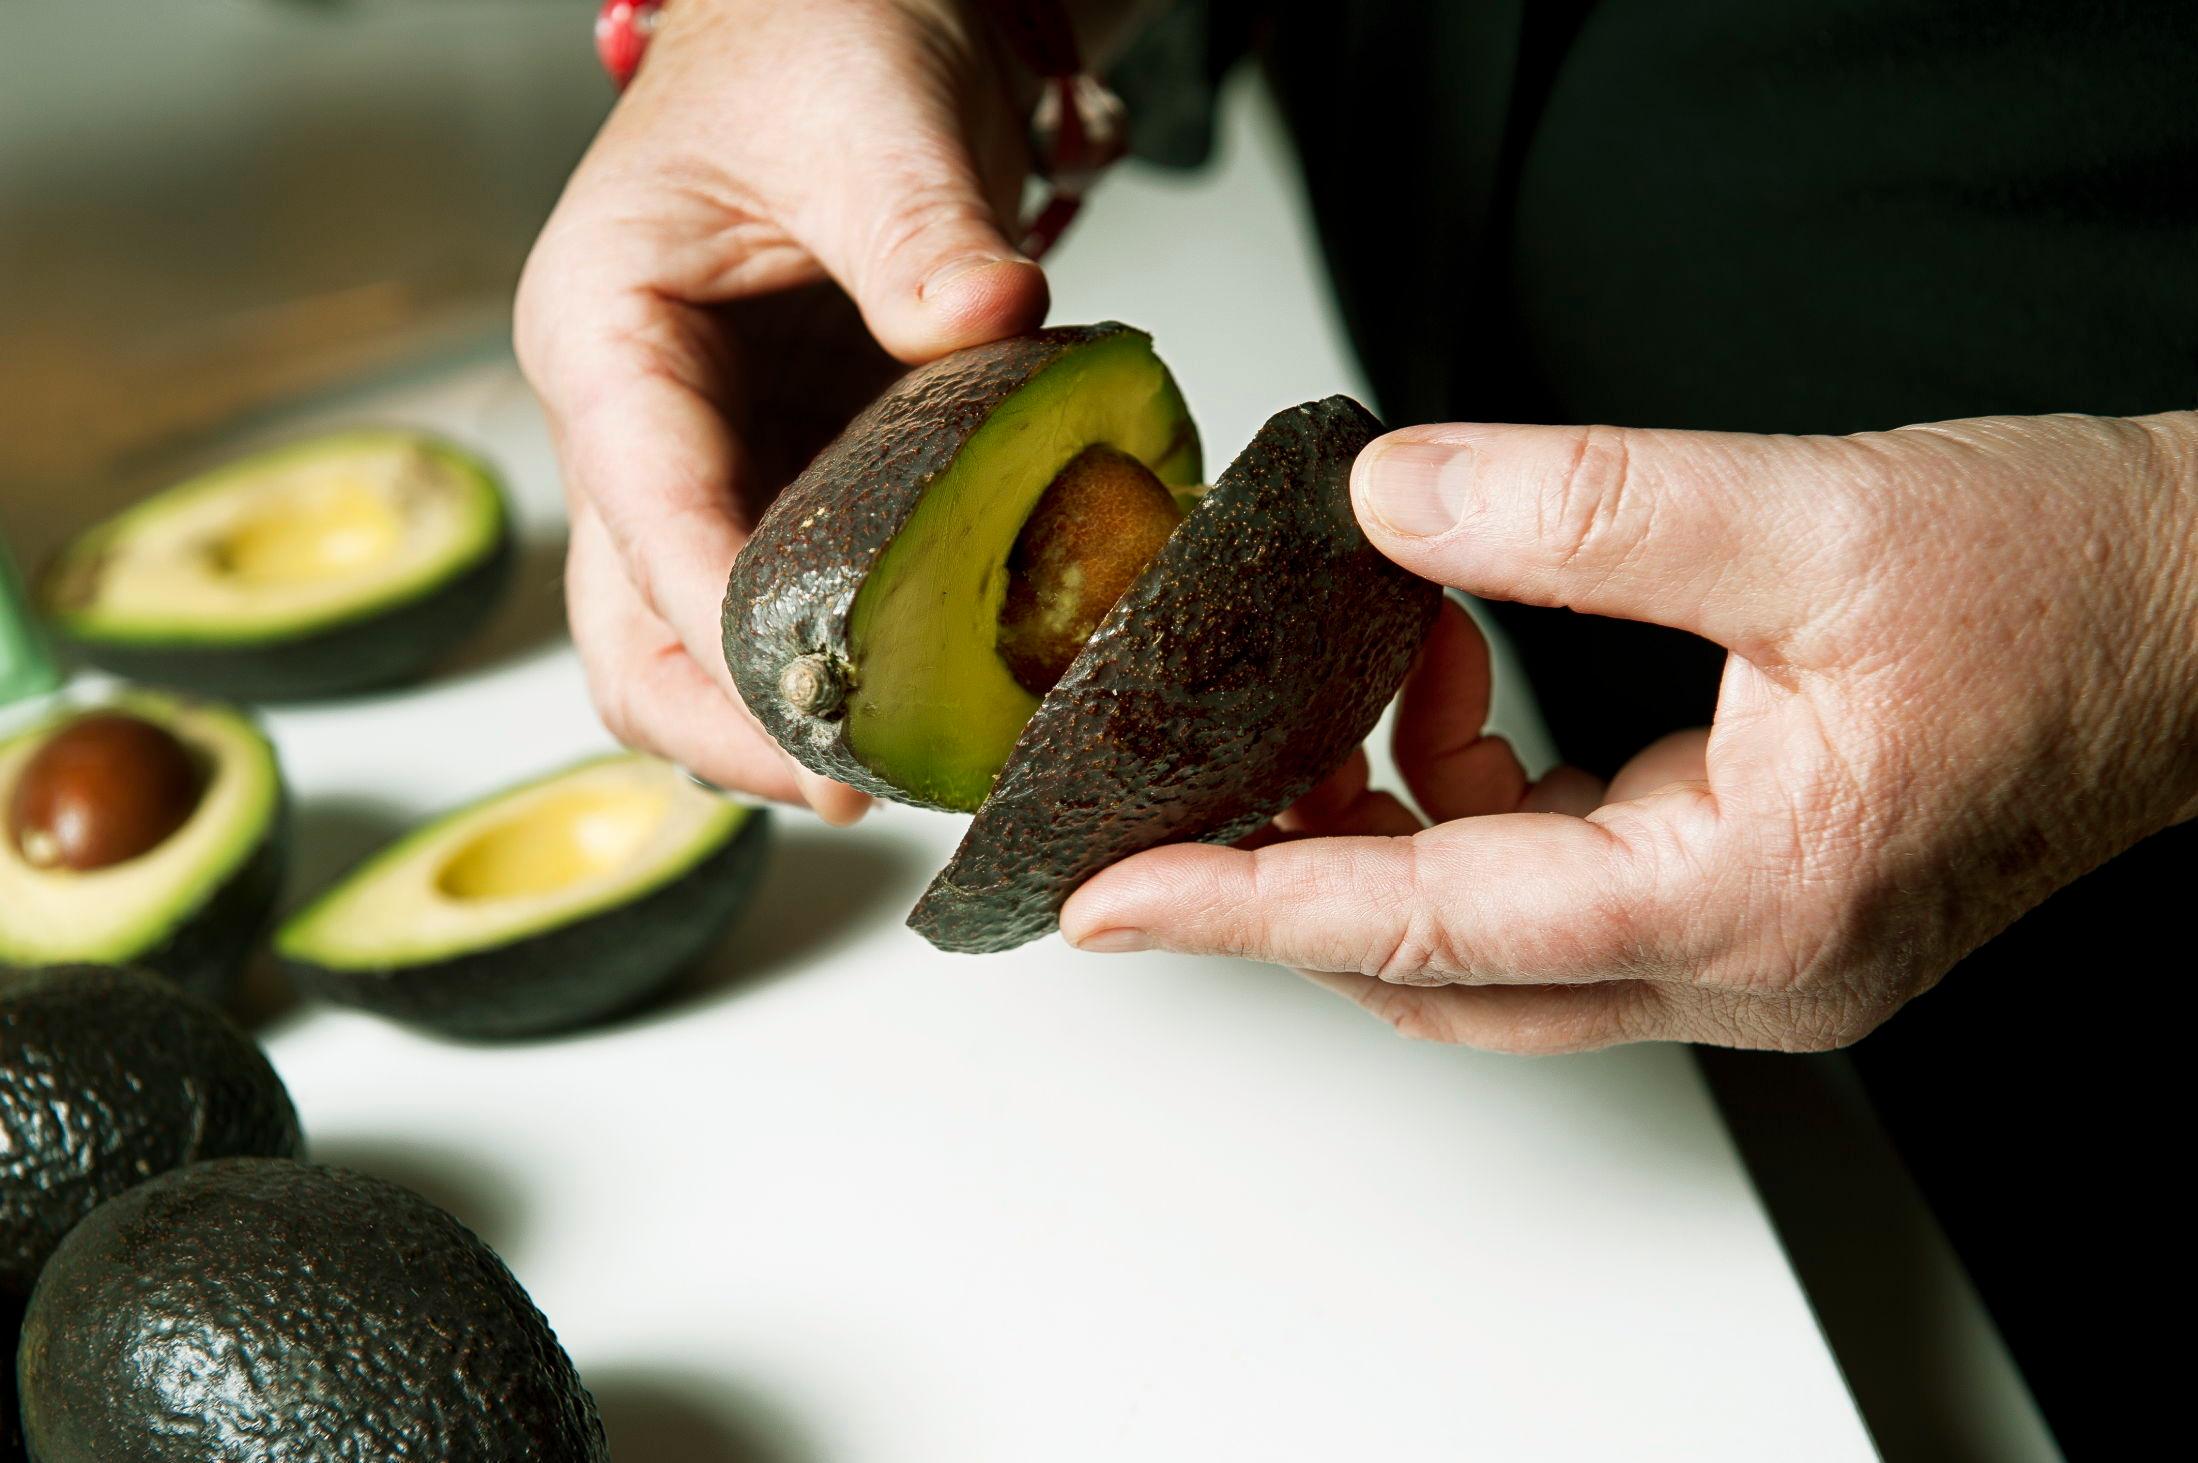 EKSOTISK: Eksotisk frukt som for eksempel avokado trenger lang og tilrettelagt frakt, noe som skader miljøet. Foto: Line Møller / VG